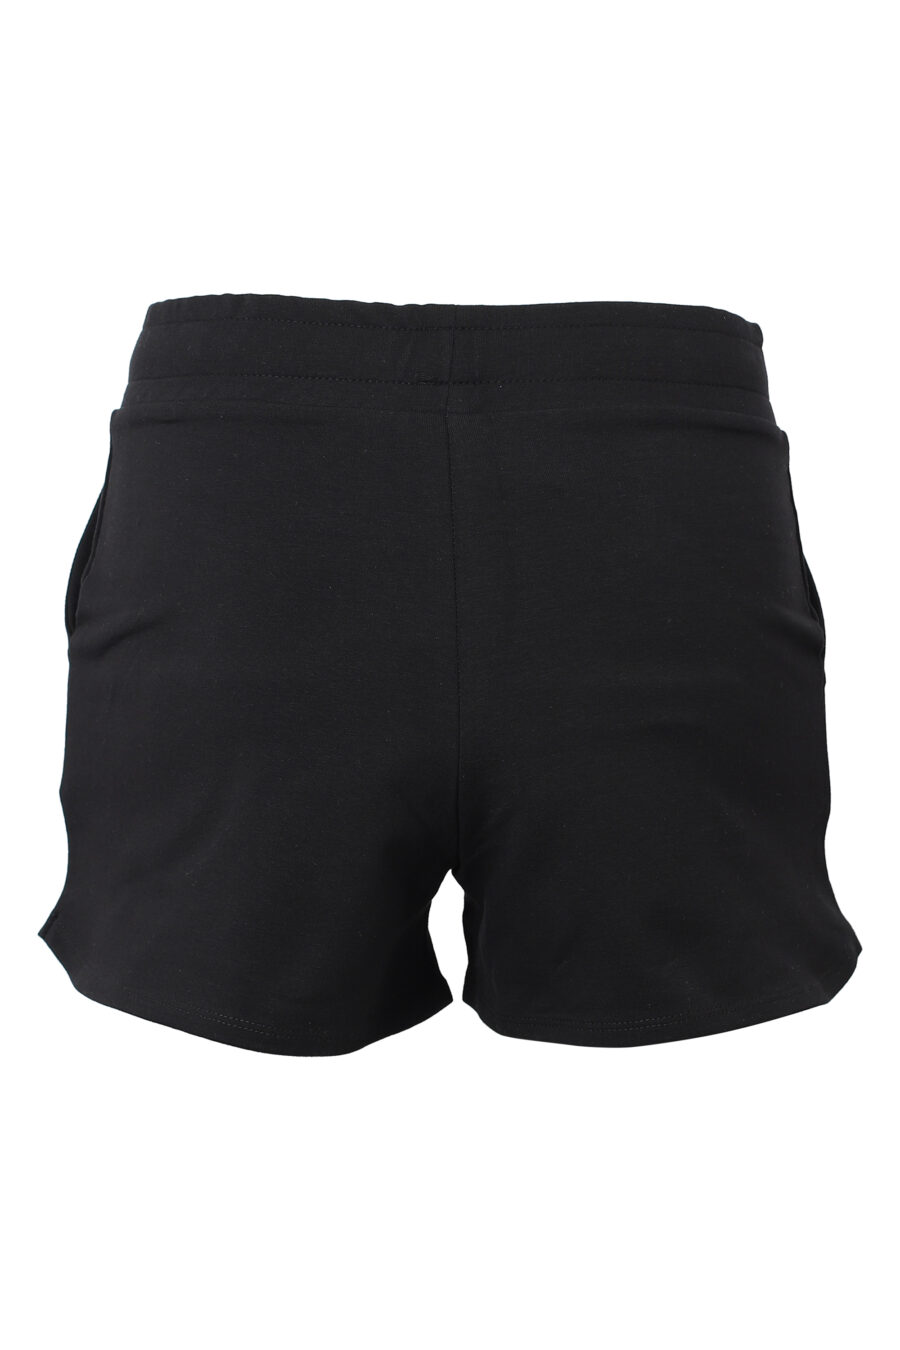 Schwarze Shorts mit strassbesetztem Logo - IMG 9848